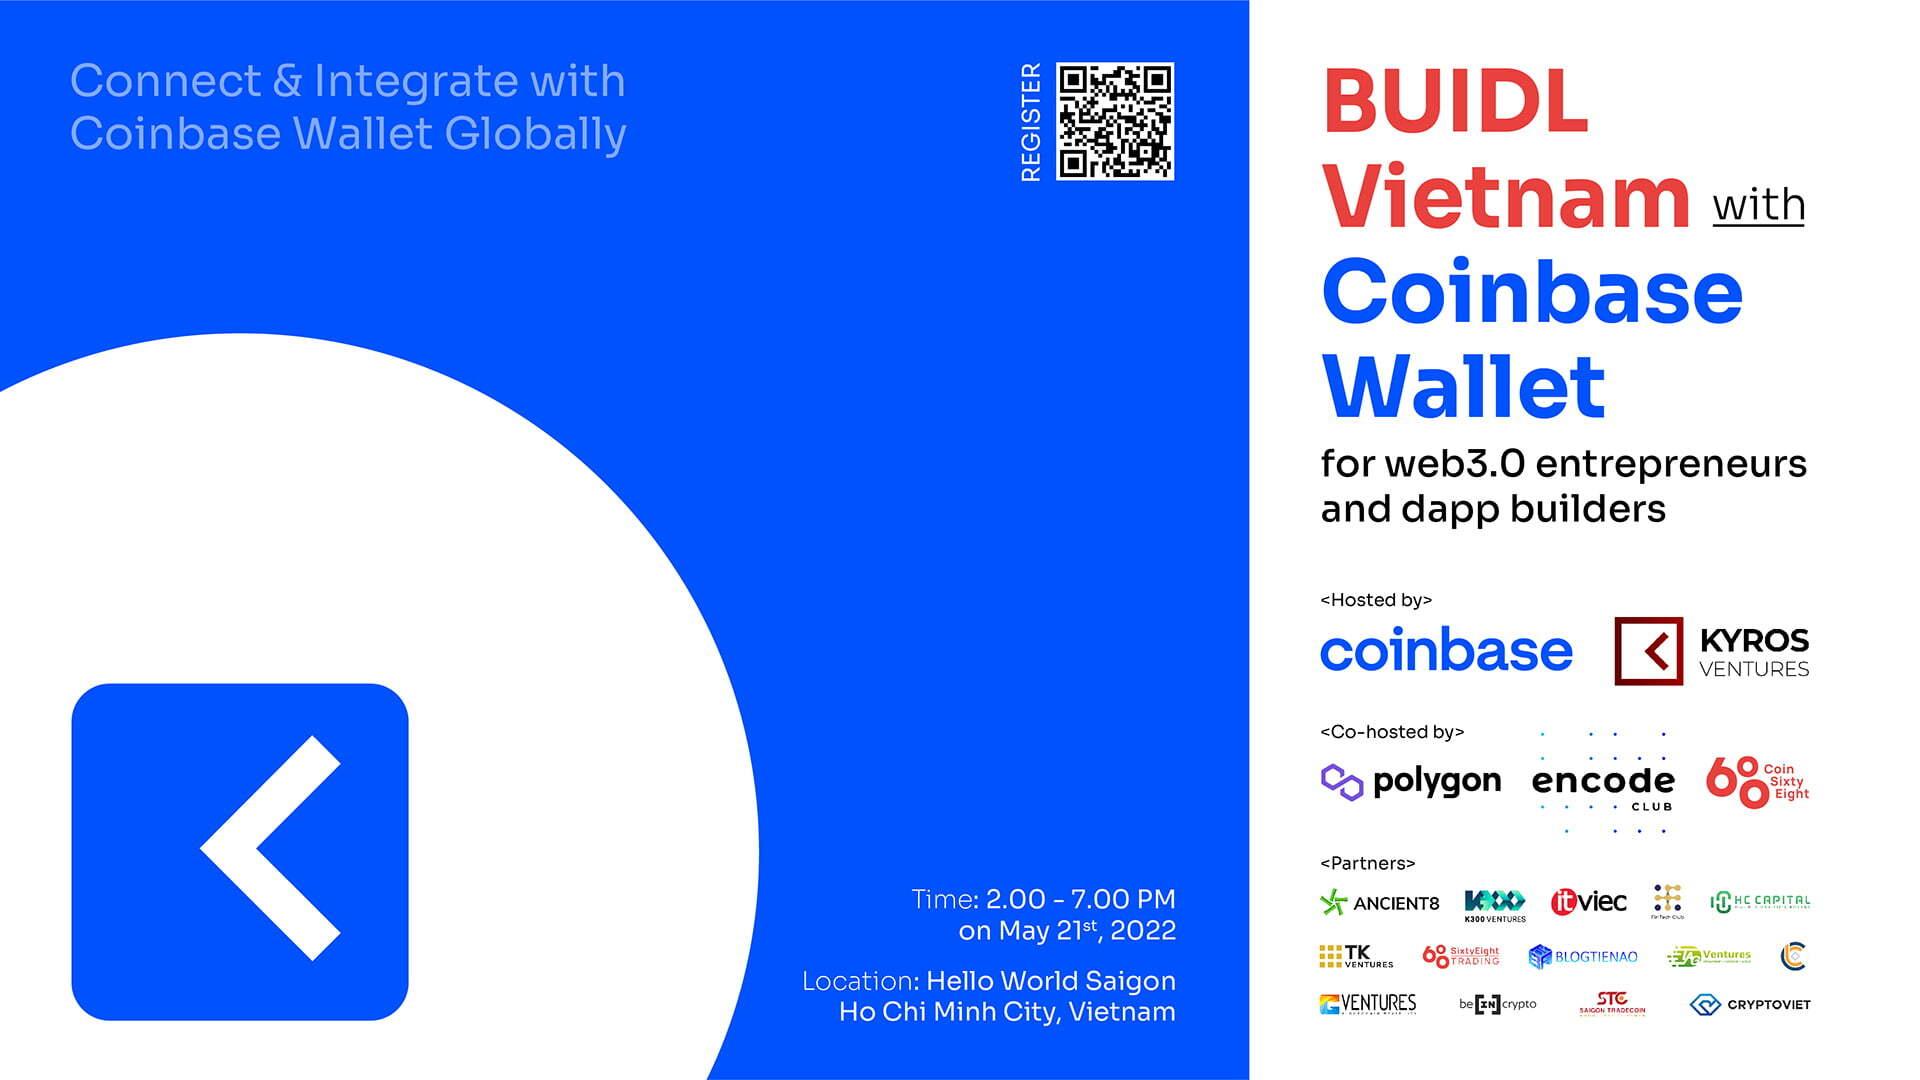 buidl-vietnam-with-coinbase-wallet-su-kien-hackathon-dau-tien-danh-cho-lap-trinh-vien-web3-tai-viet-nam